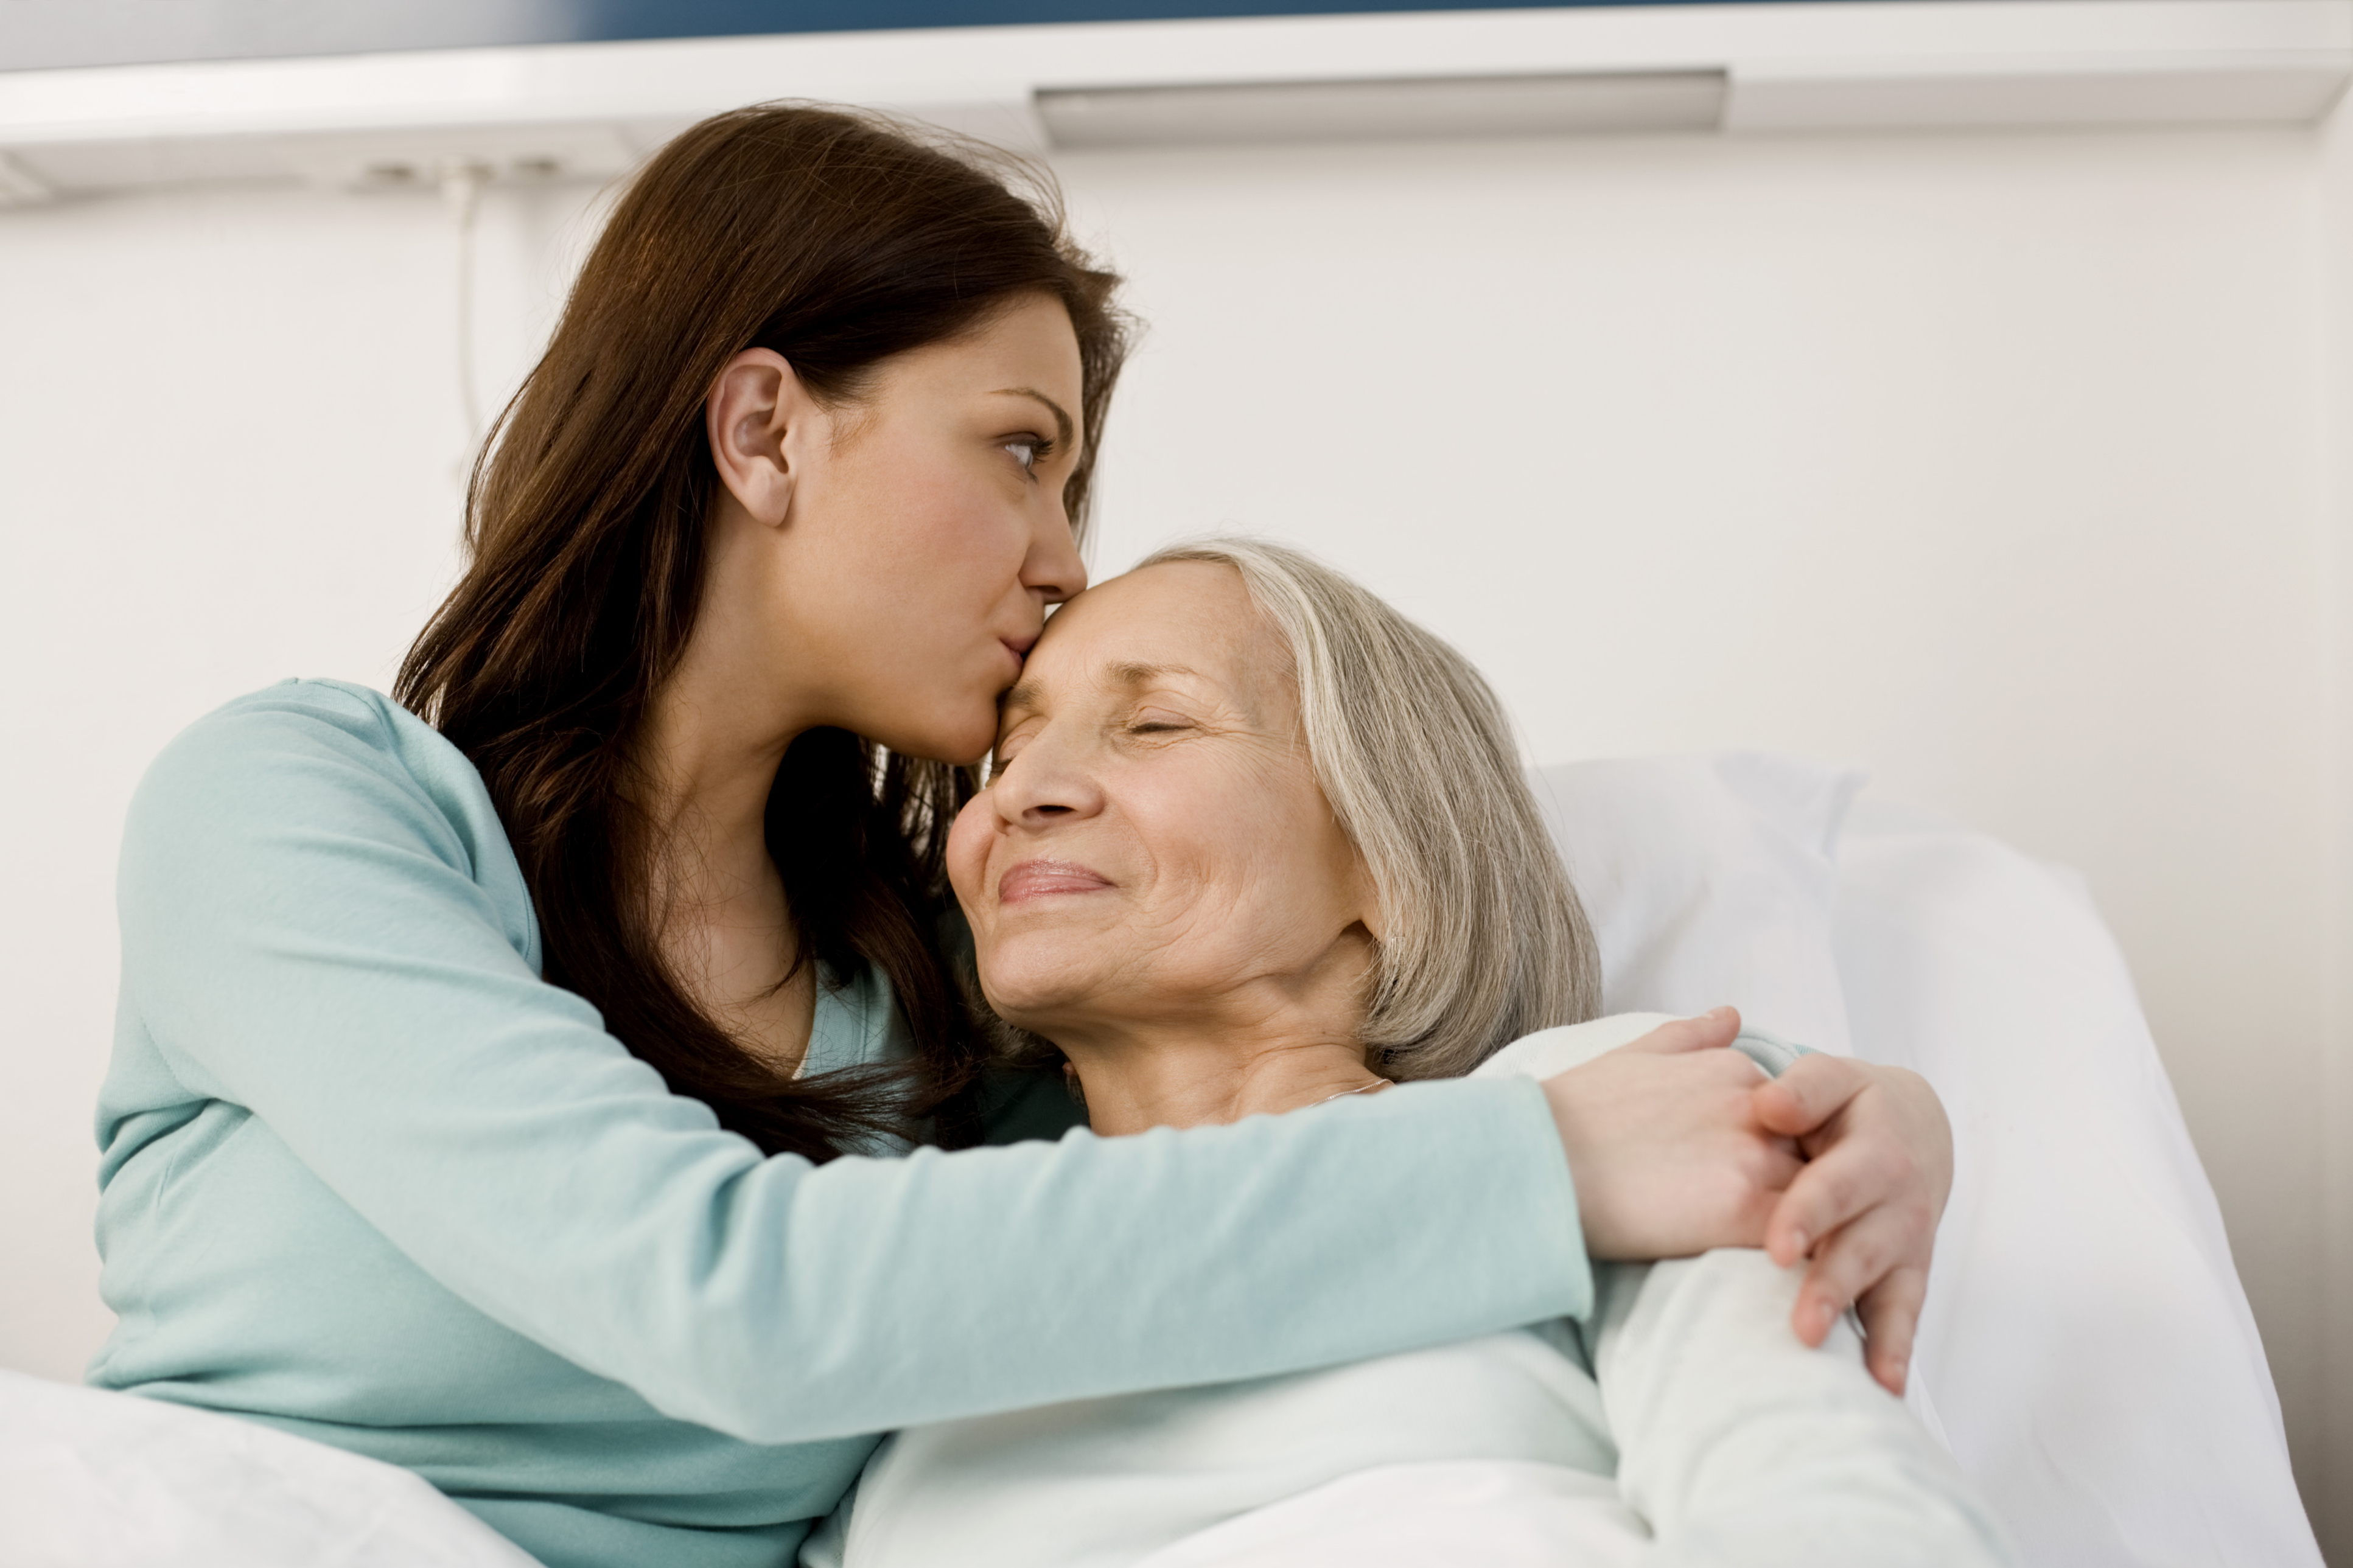 Studiile arată că dacă vei sta mai mult alături de mamă, ea va trăi mai mulți ani